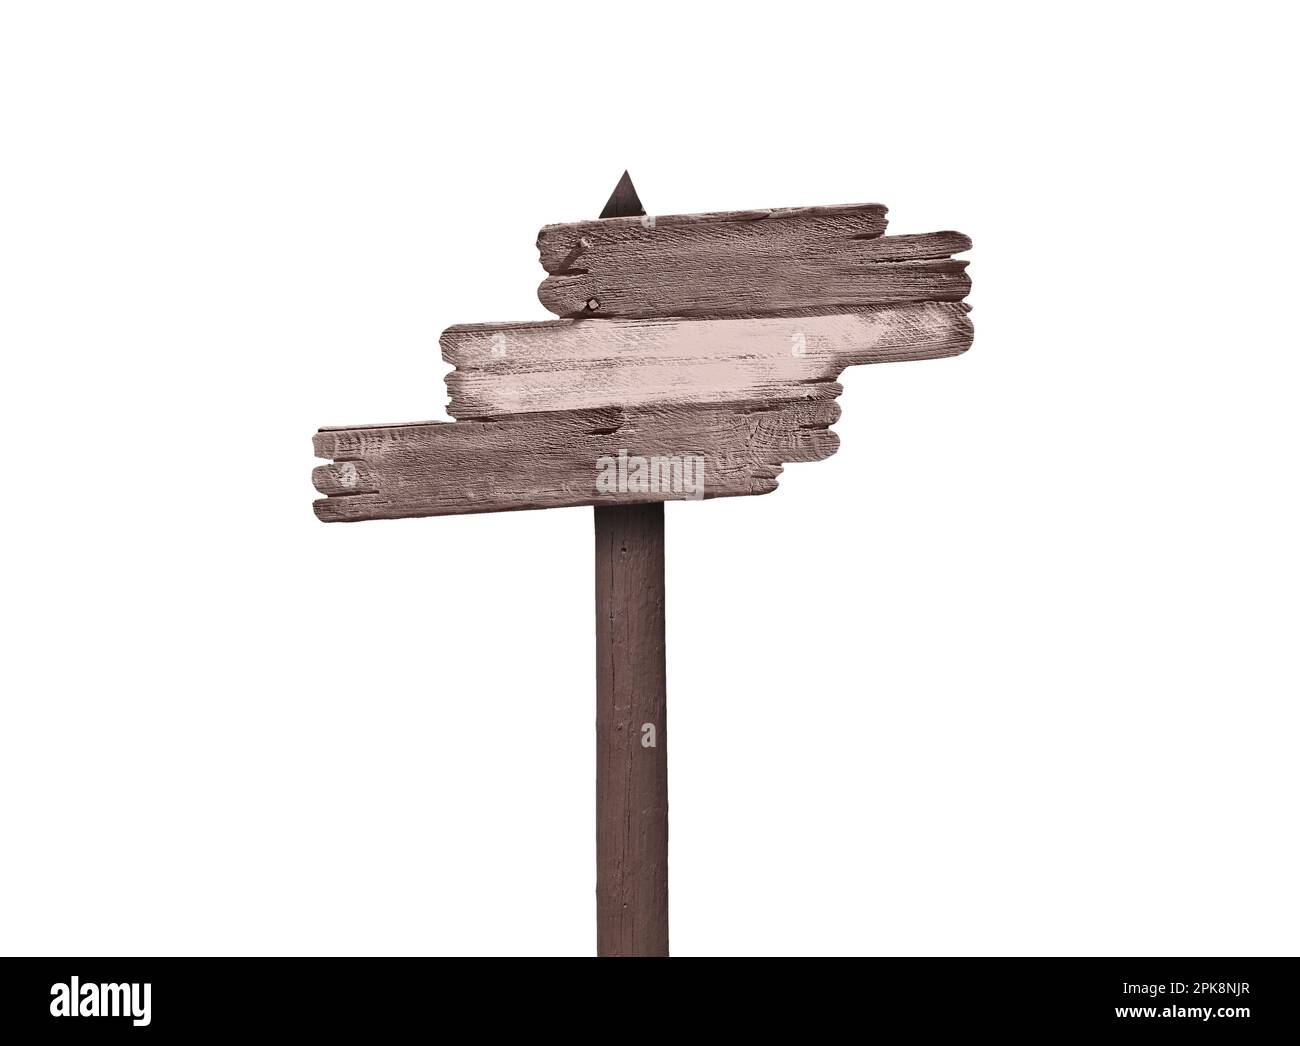 Albero vuoto vecchi segni rustici di direzione in legno su un palo, isolato su bianco con copy-space Foto Stock